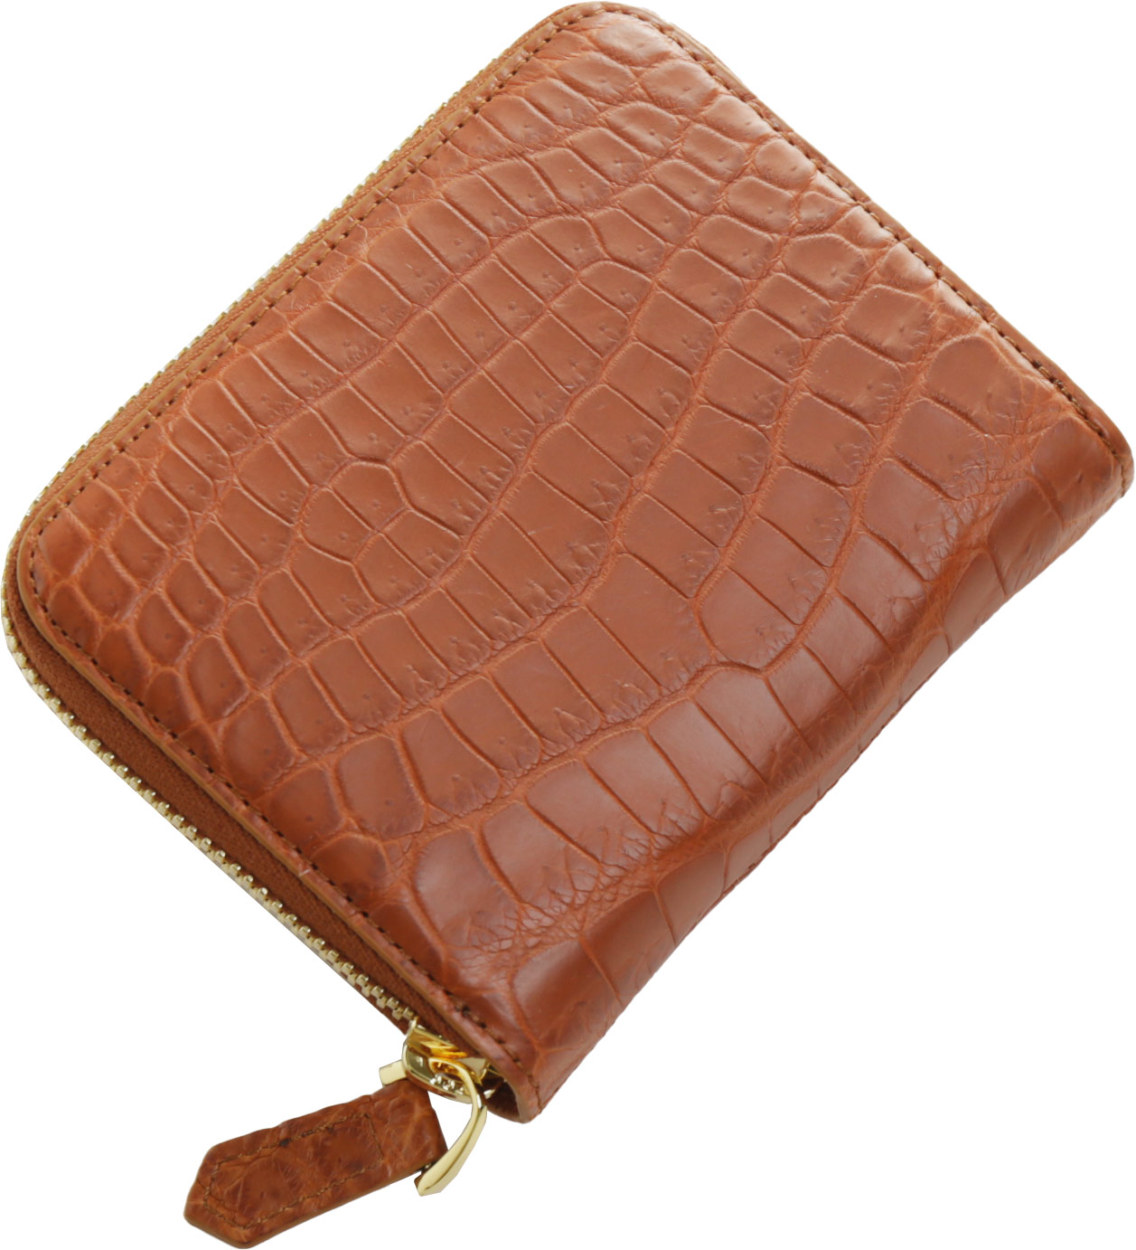 ミニ財布 メンズ クロコダイル 小さい財布 財布 本革 (06001533-mens-1r)